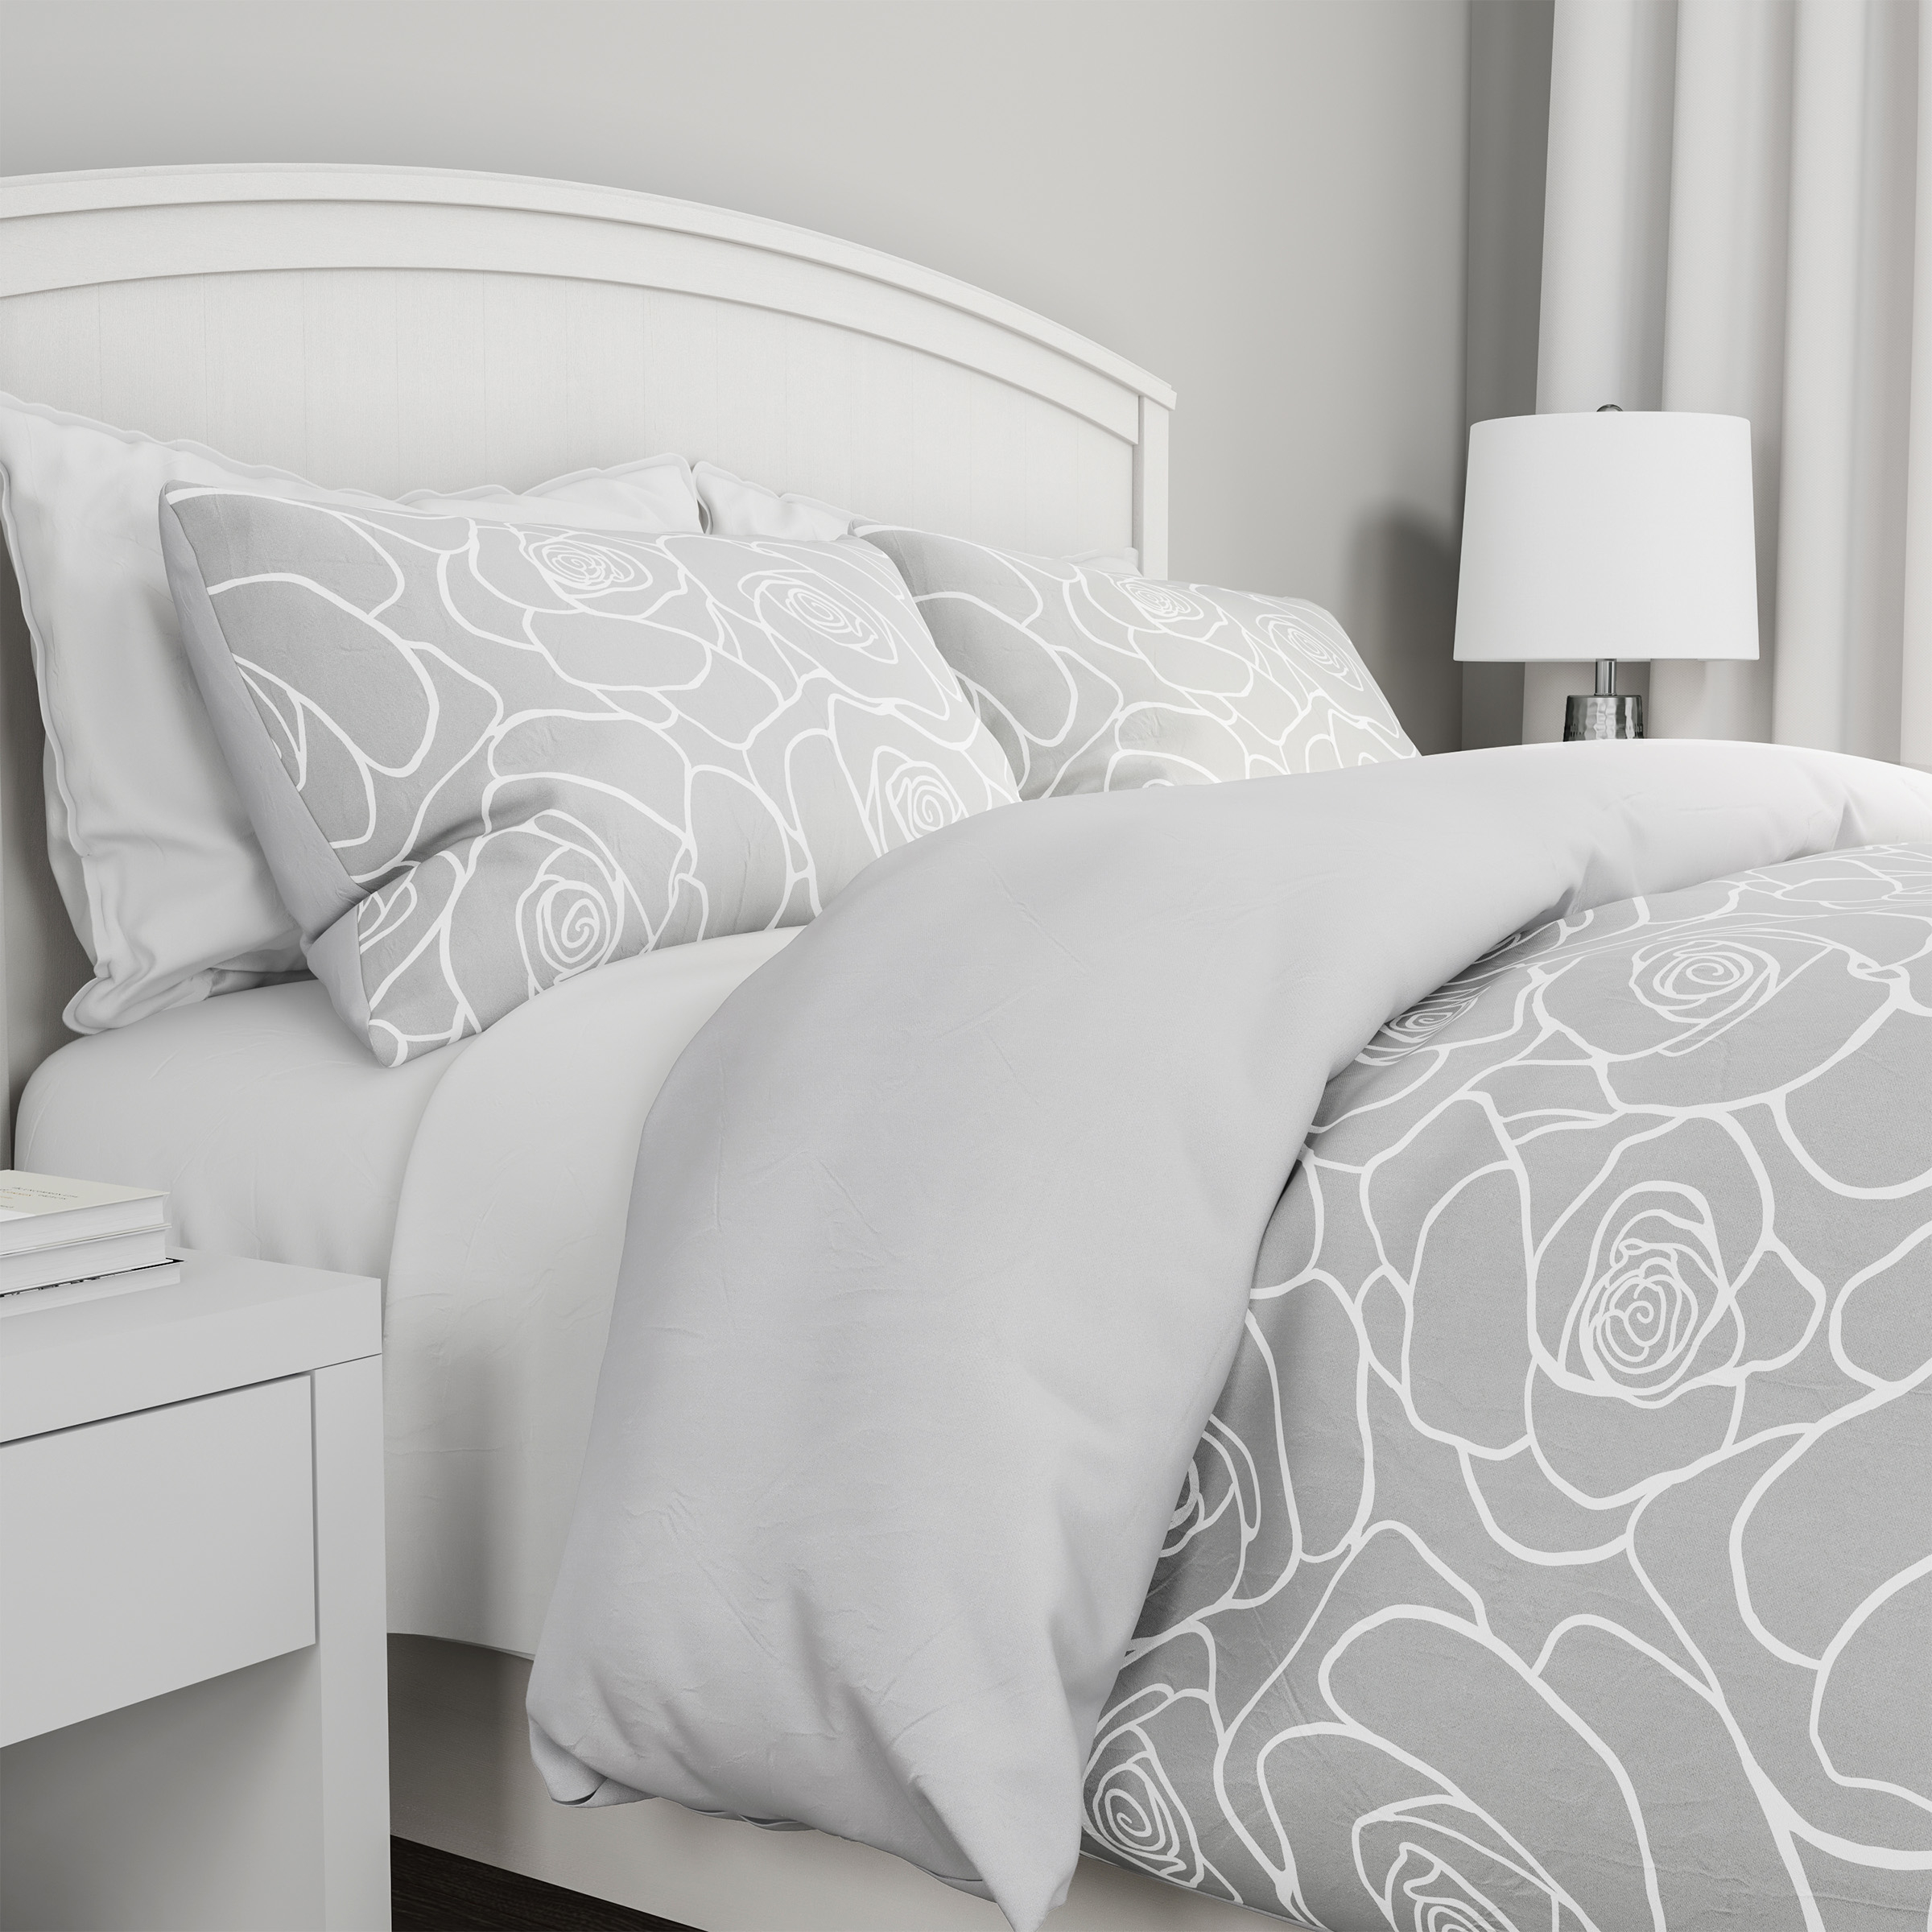 3-Piece Comforter Set â Hypoallergenic Microfiber Bed Of Roses Floral Print Down Alternative All-Season Blanket - Full/Queen